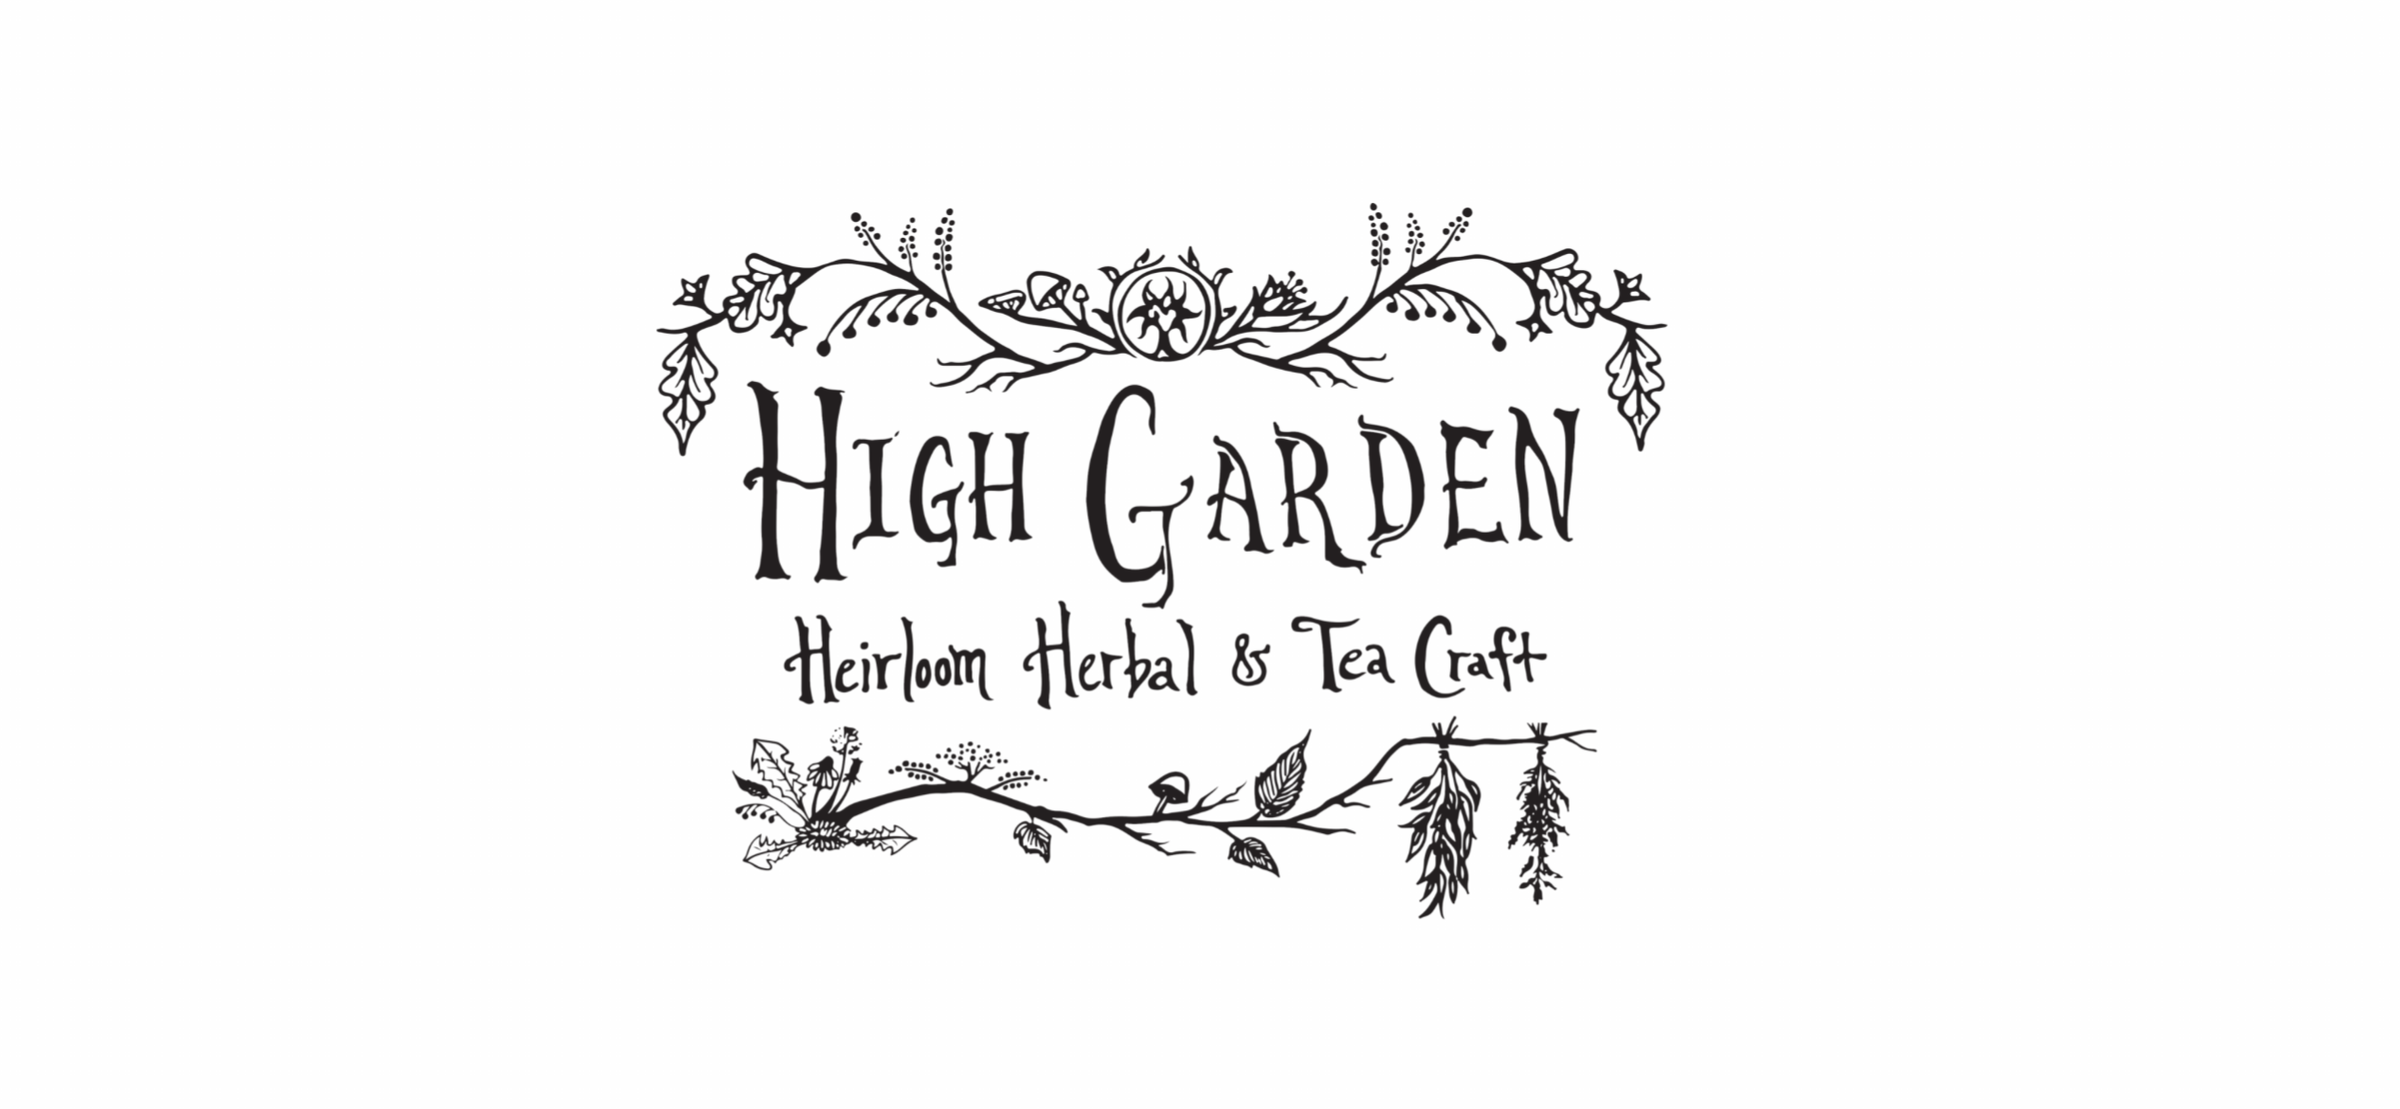 High Garden Teas